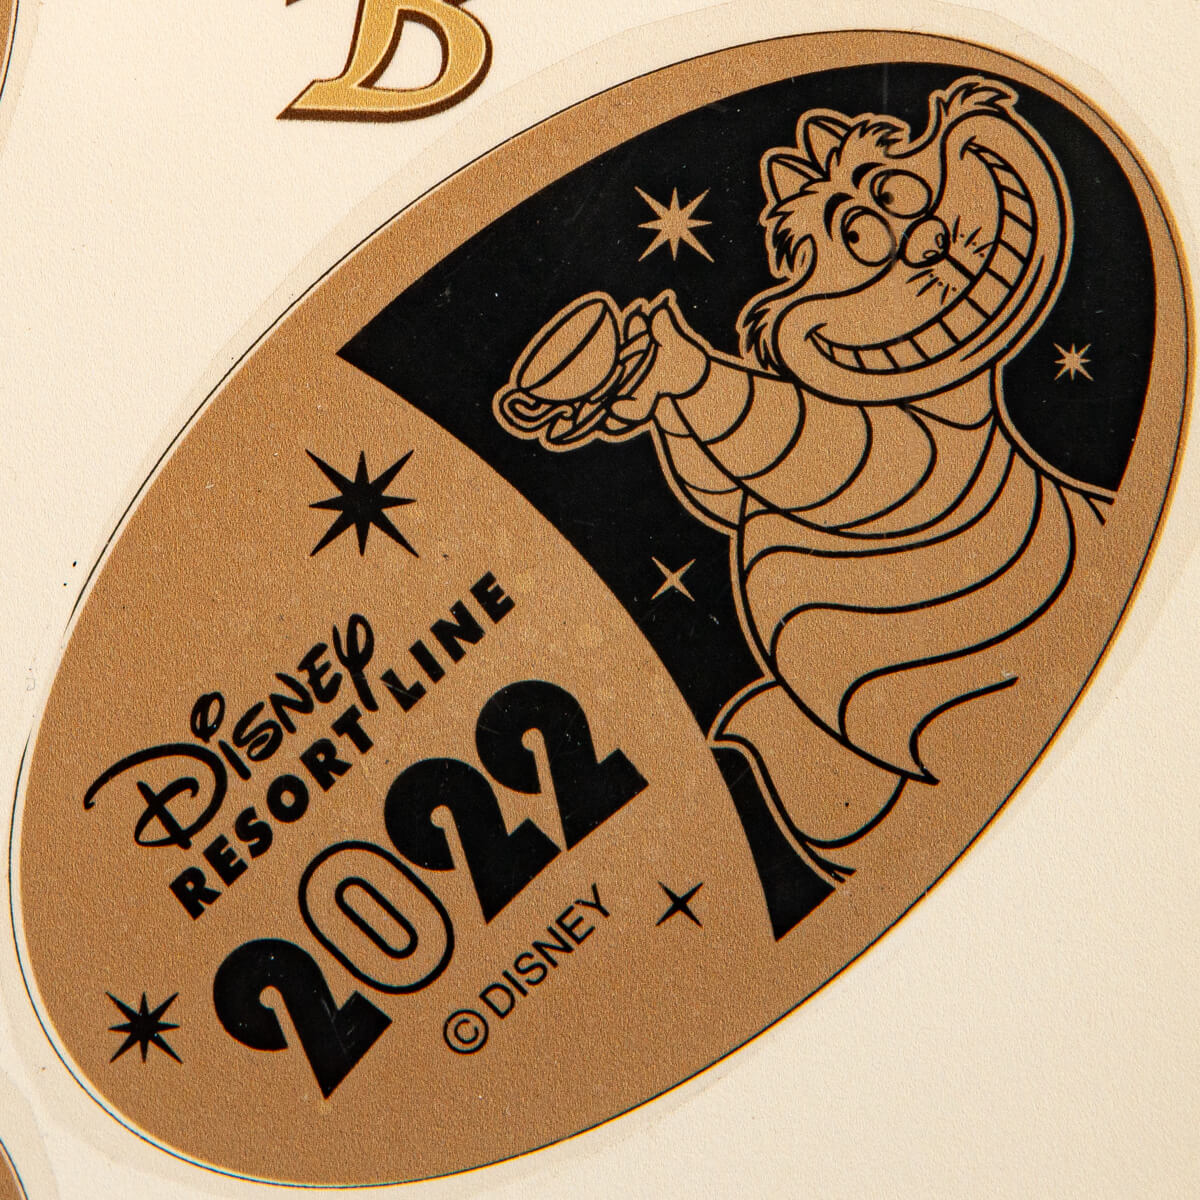 東京ディズニーランド・ステーション2022イヤリースーベニアメダル「ディズニー映画『ふしぎの国のアリス』の人気キャラクター「チェシャ猫」」